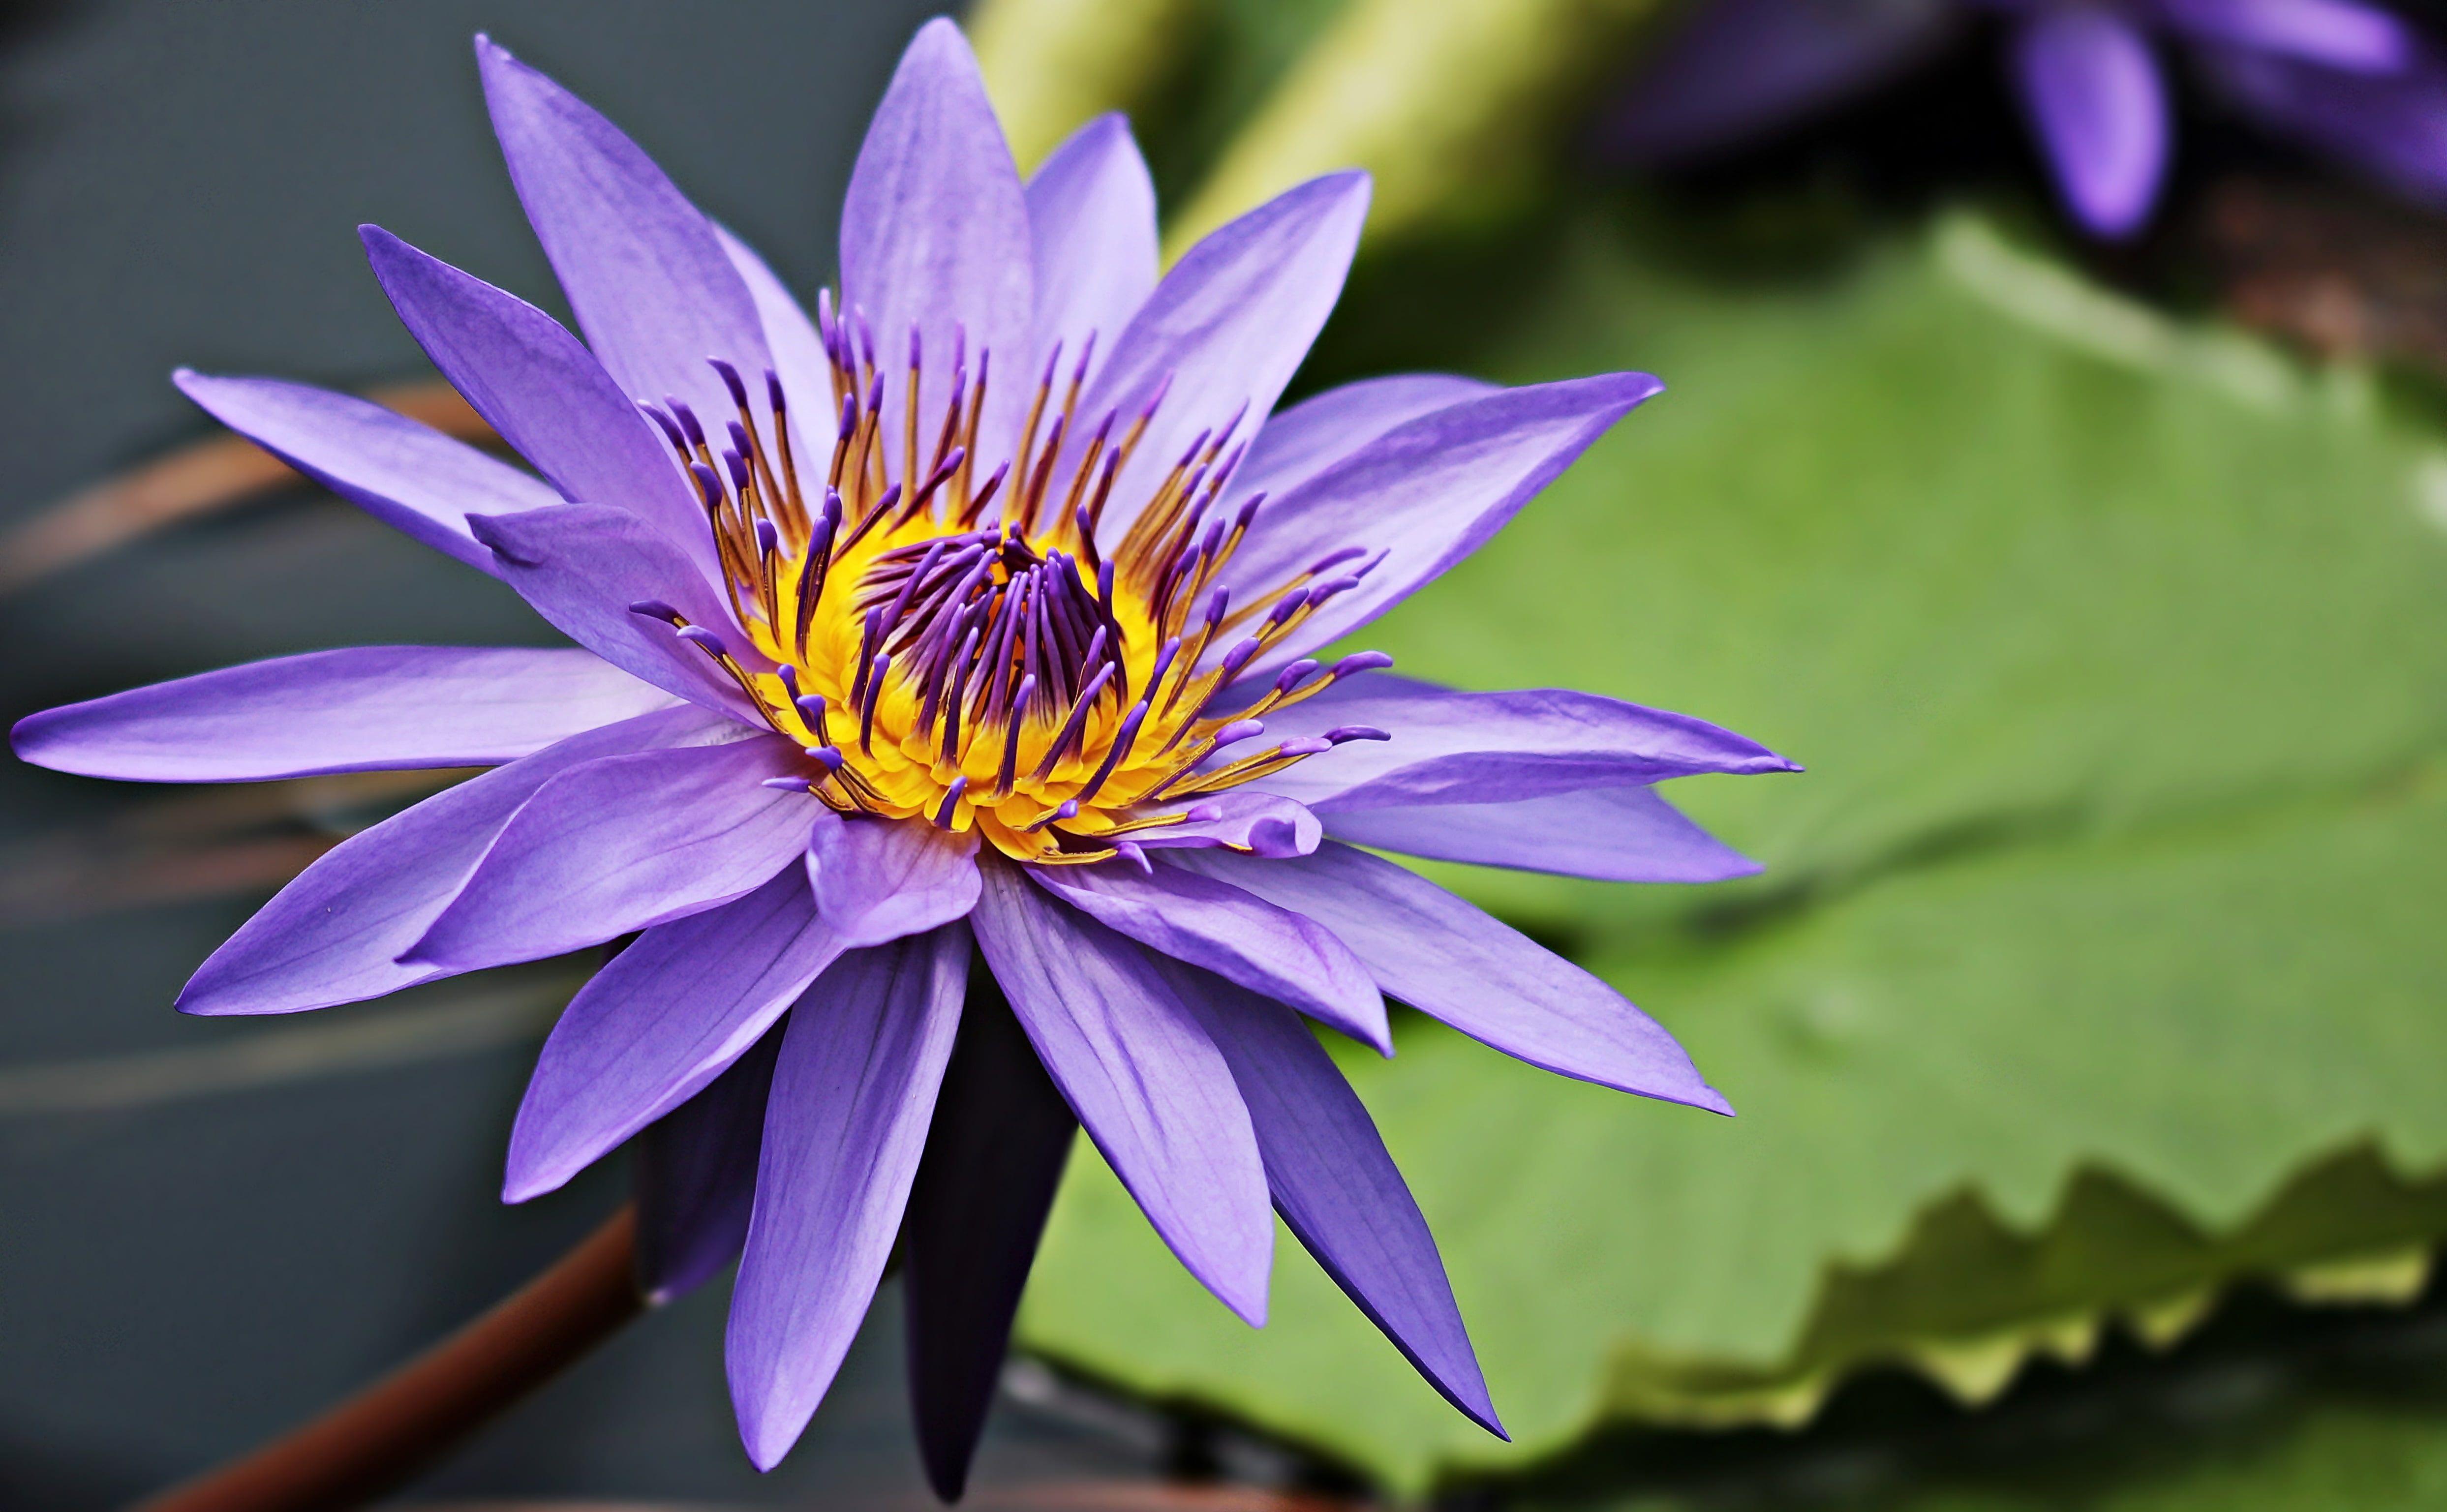 purple Lotus flower in closeup photo at daytime